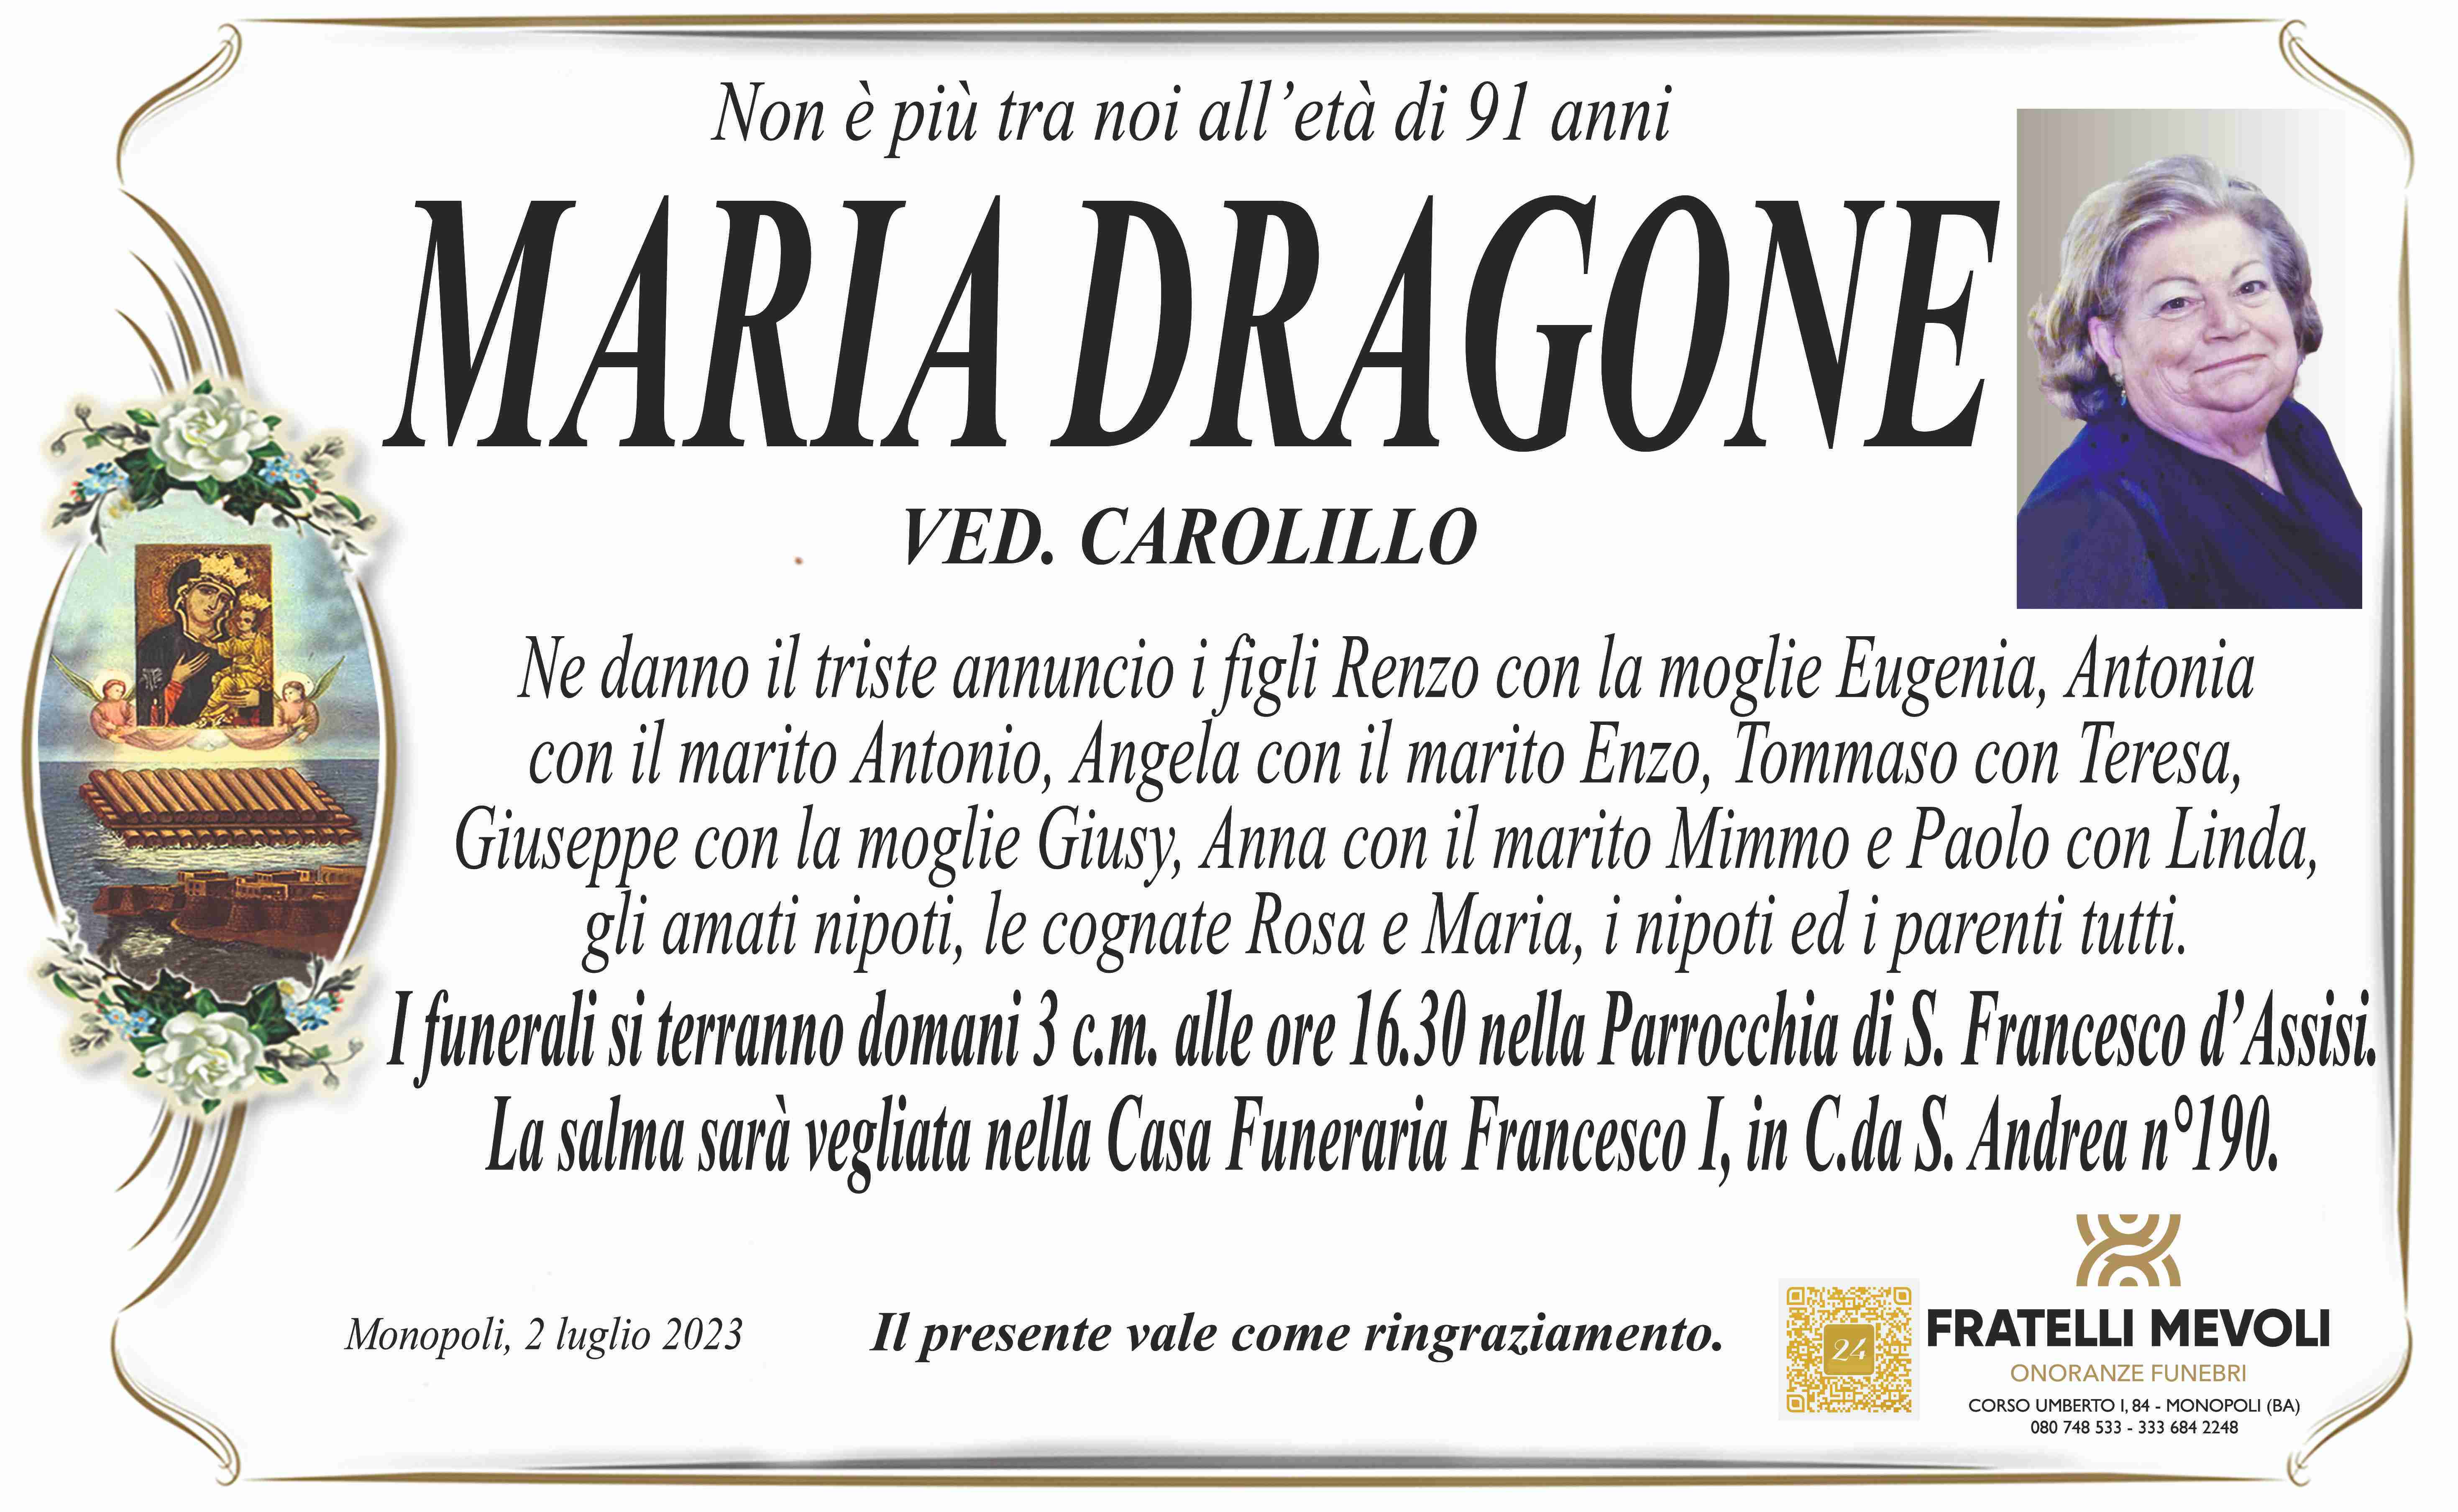 Maria Dragone